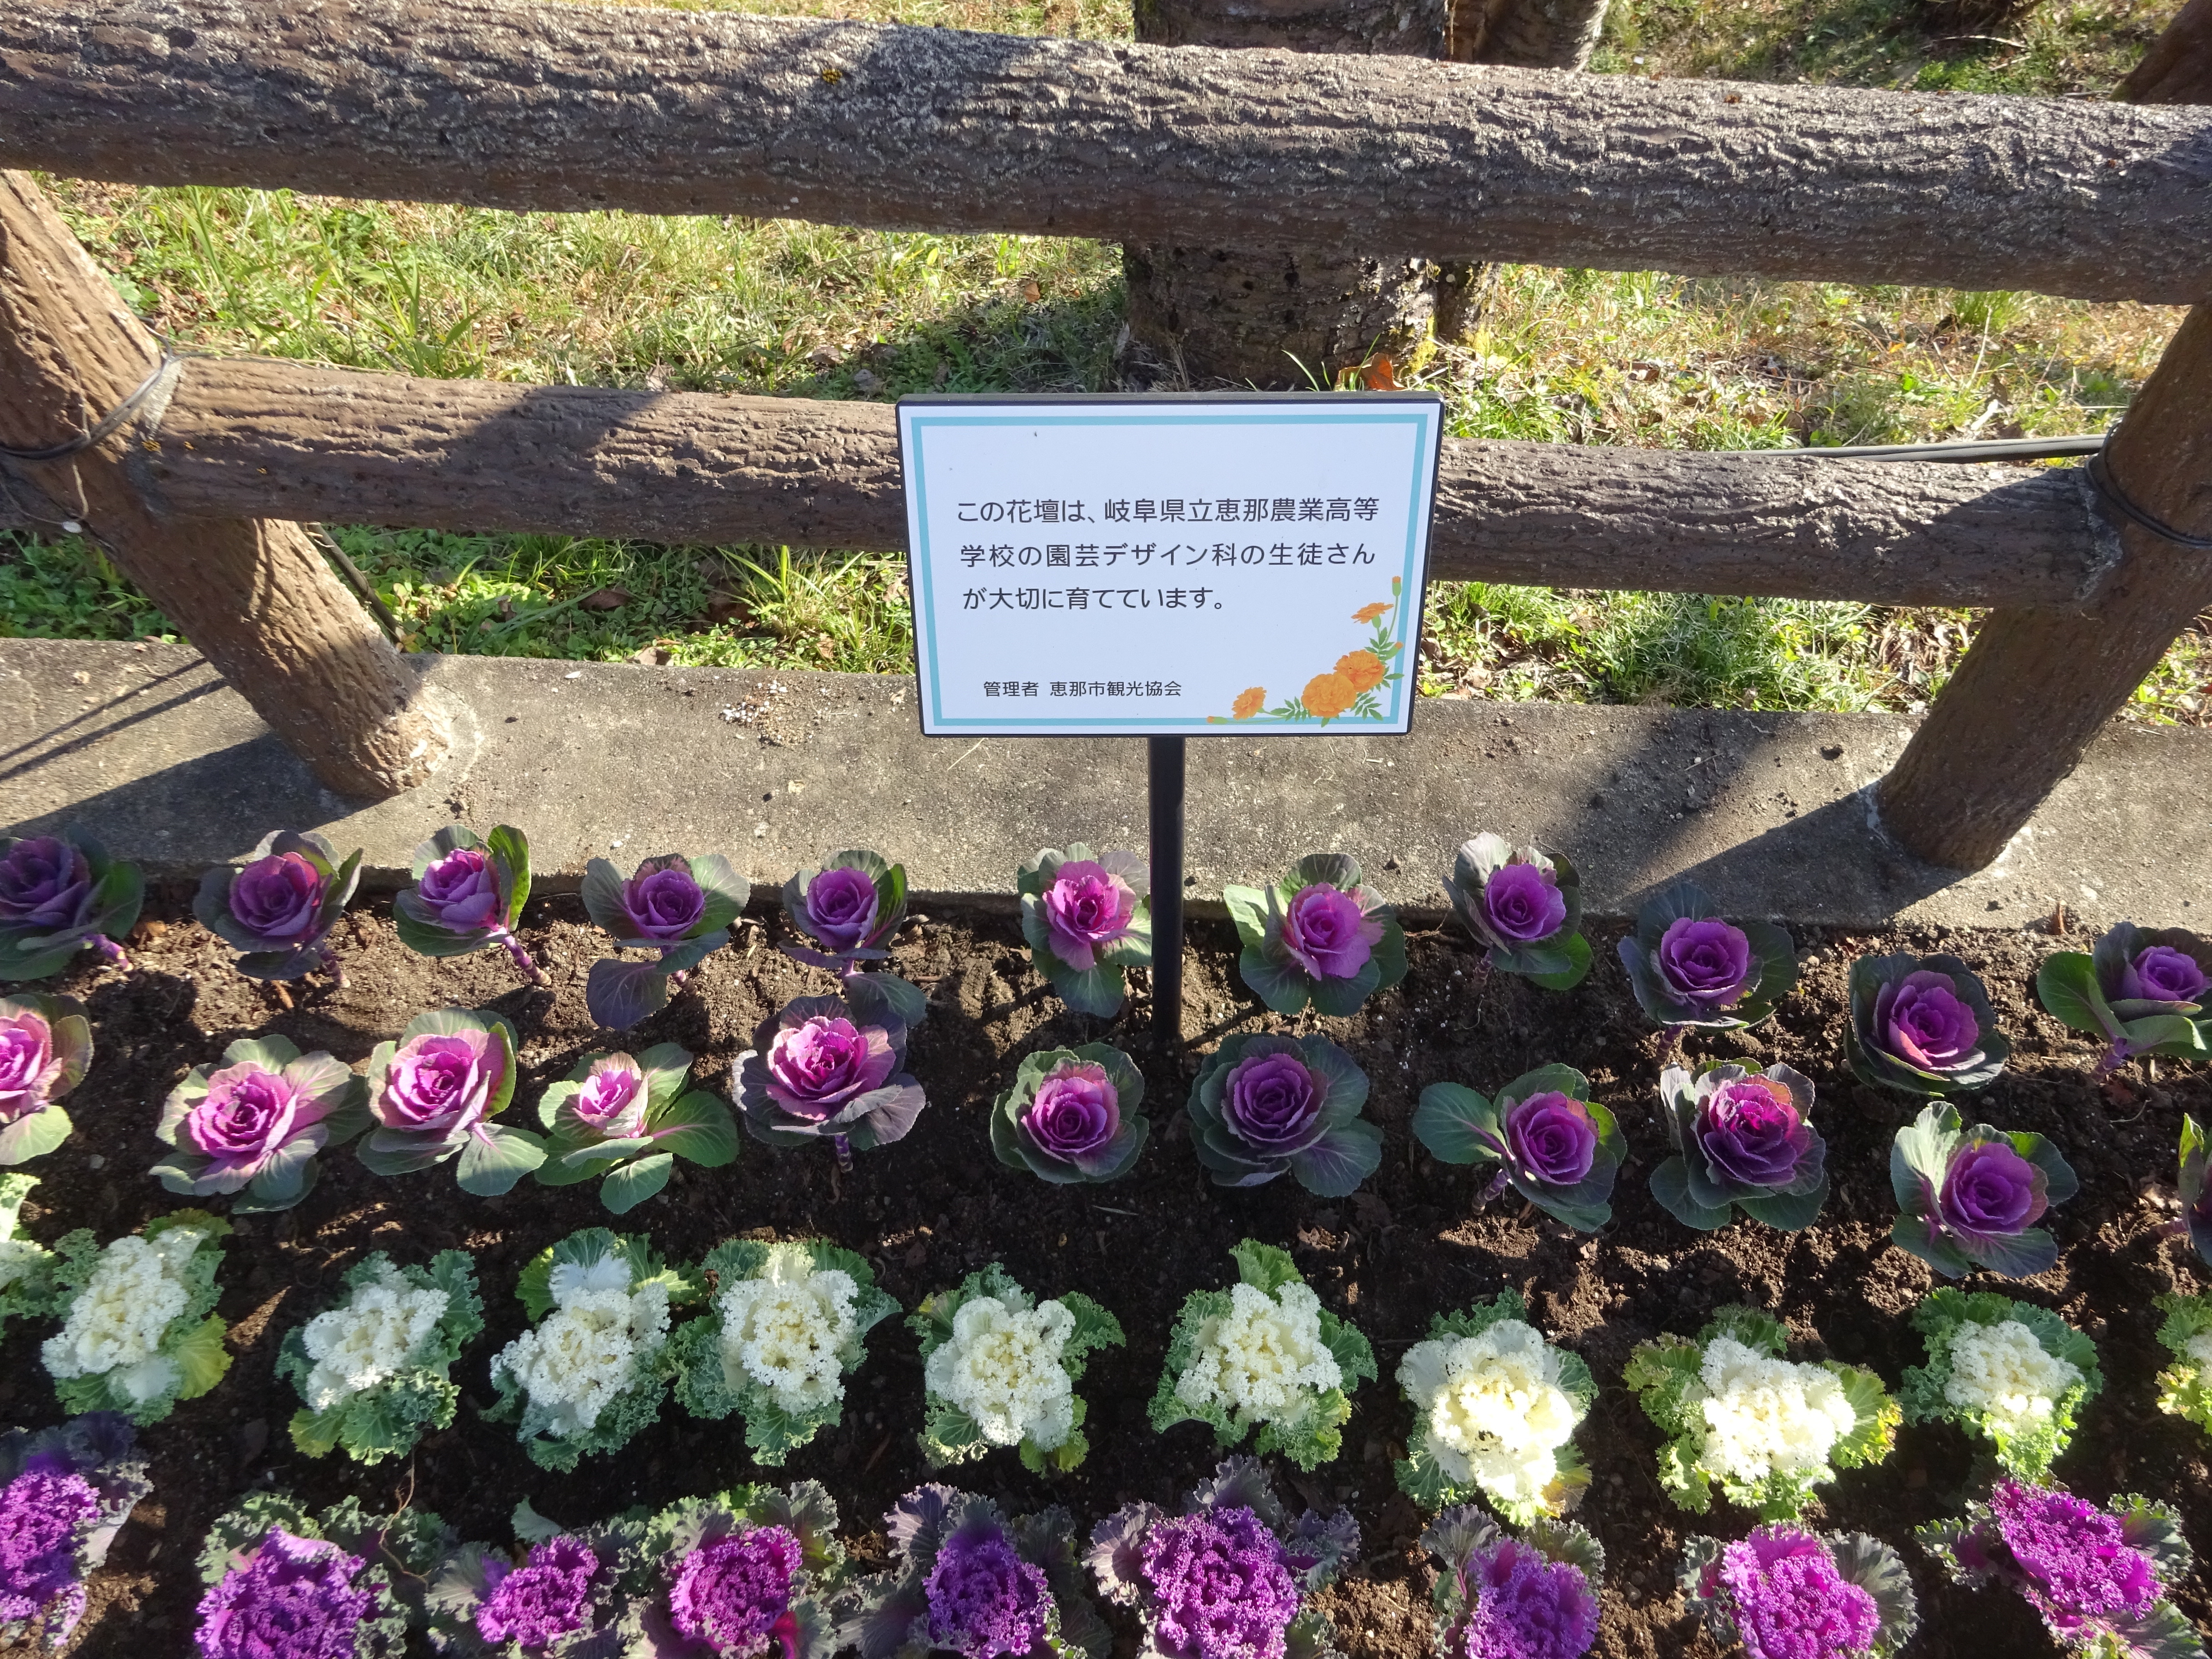 恵那峡公園にハボタンを植栽 え な恵那 岐阜県恵那市観光サイト 一般社団法人恵那市観光協会